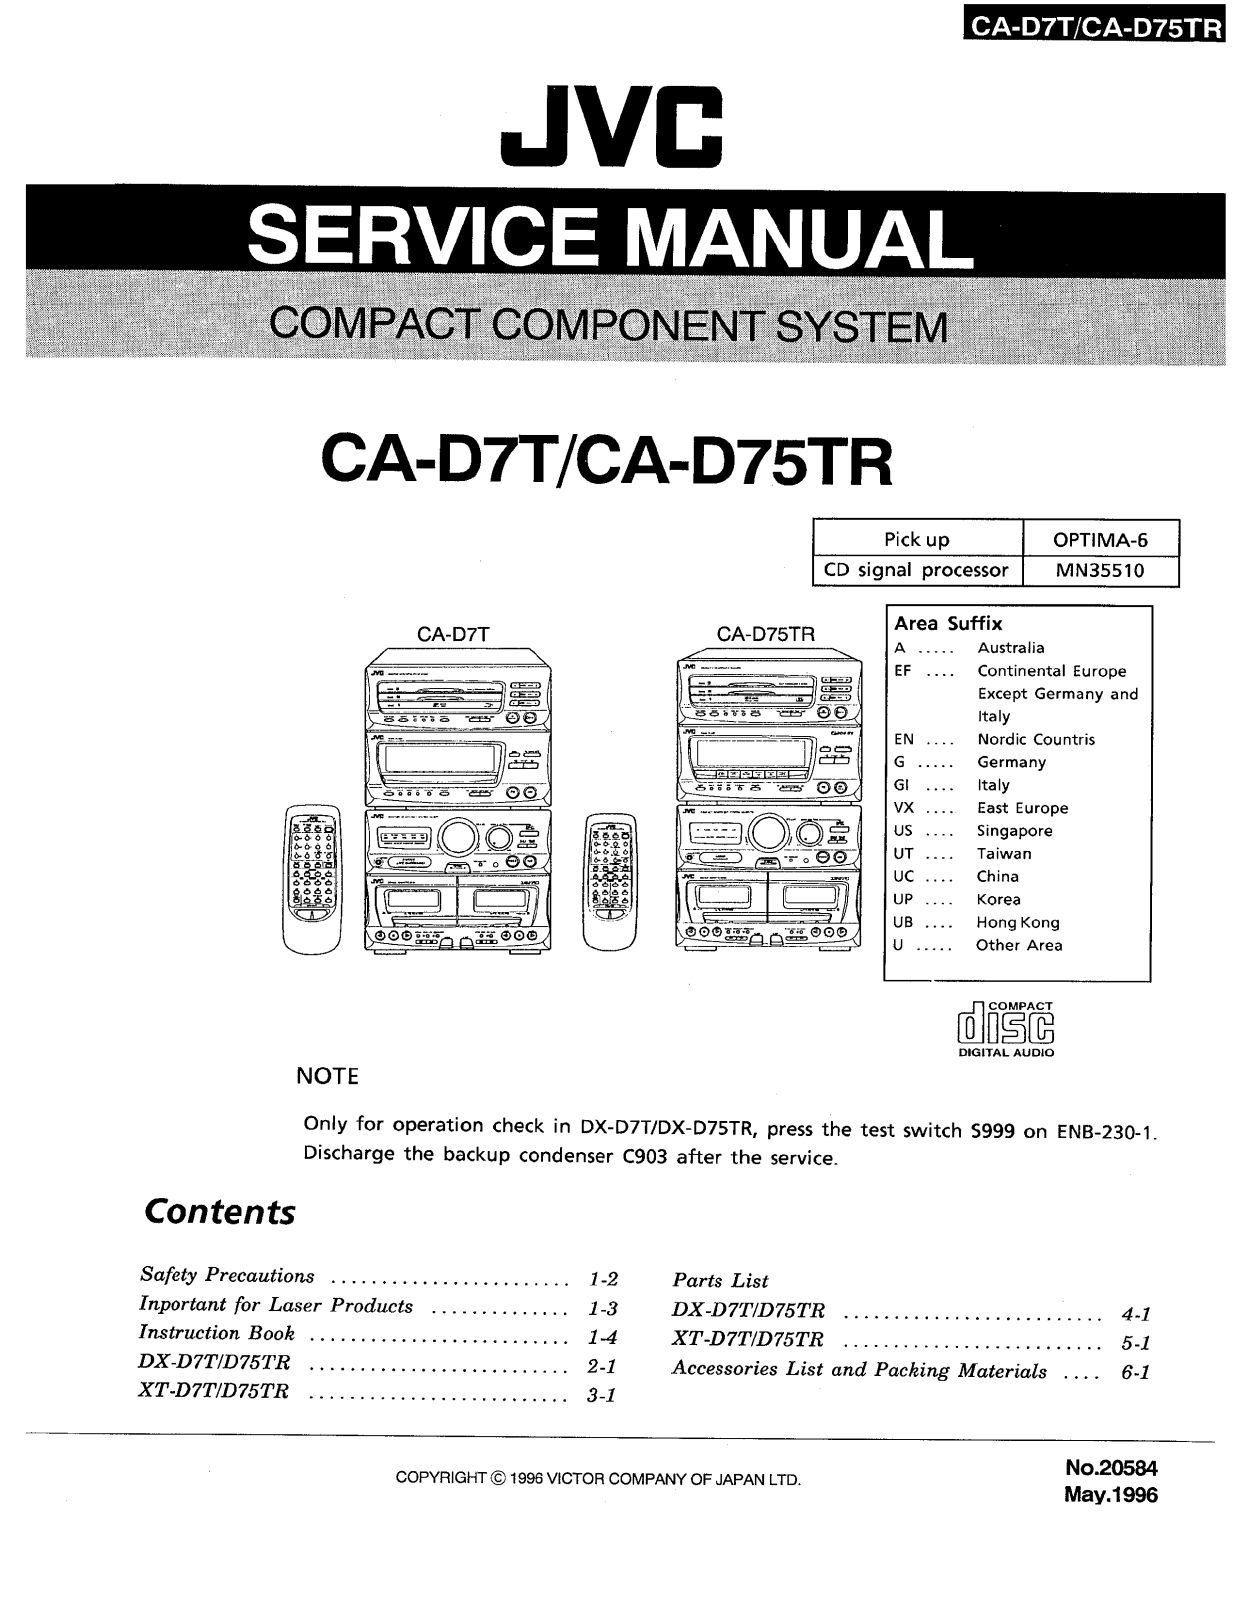 JVC CA-D7T, CA-D75TR Service Manual